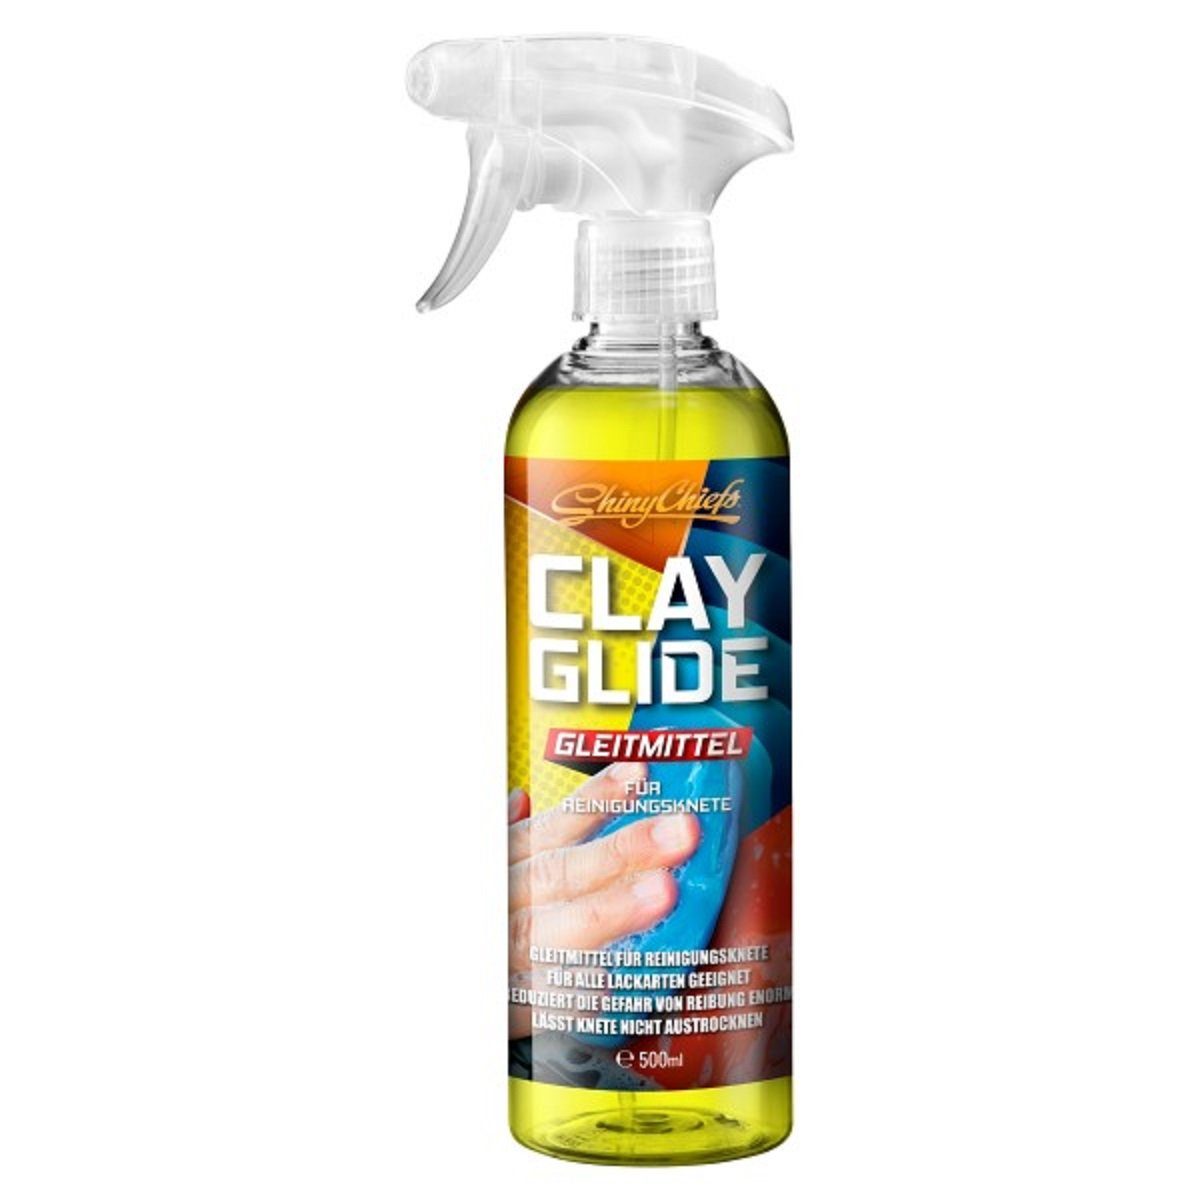 CLAY Hilfsmittel den Einsatz GLIDE Reinigungsknete Auto-Reinigungsmittel für (1-St) von GLEITMITTEL ShinyChiefs